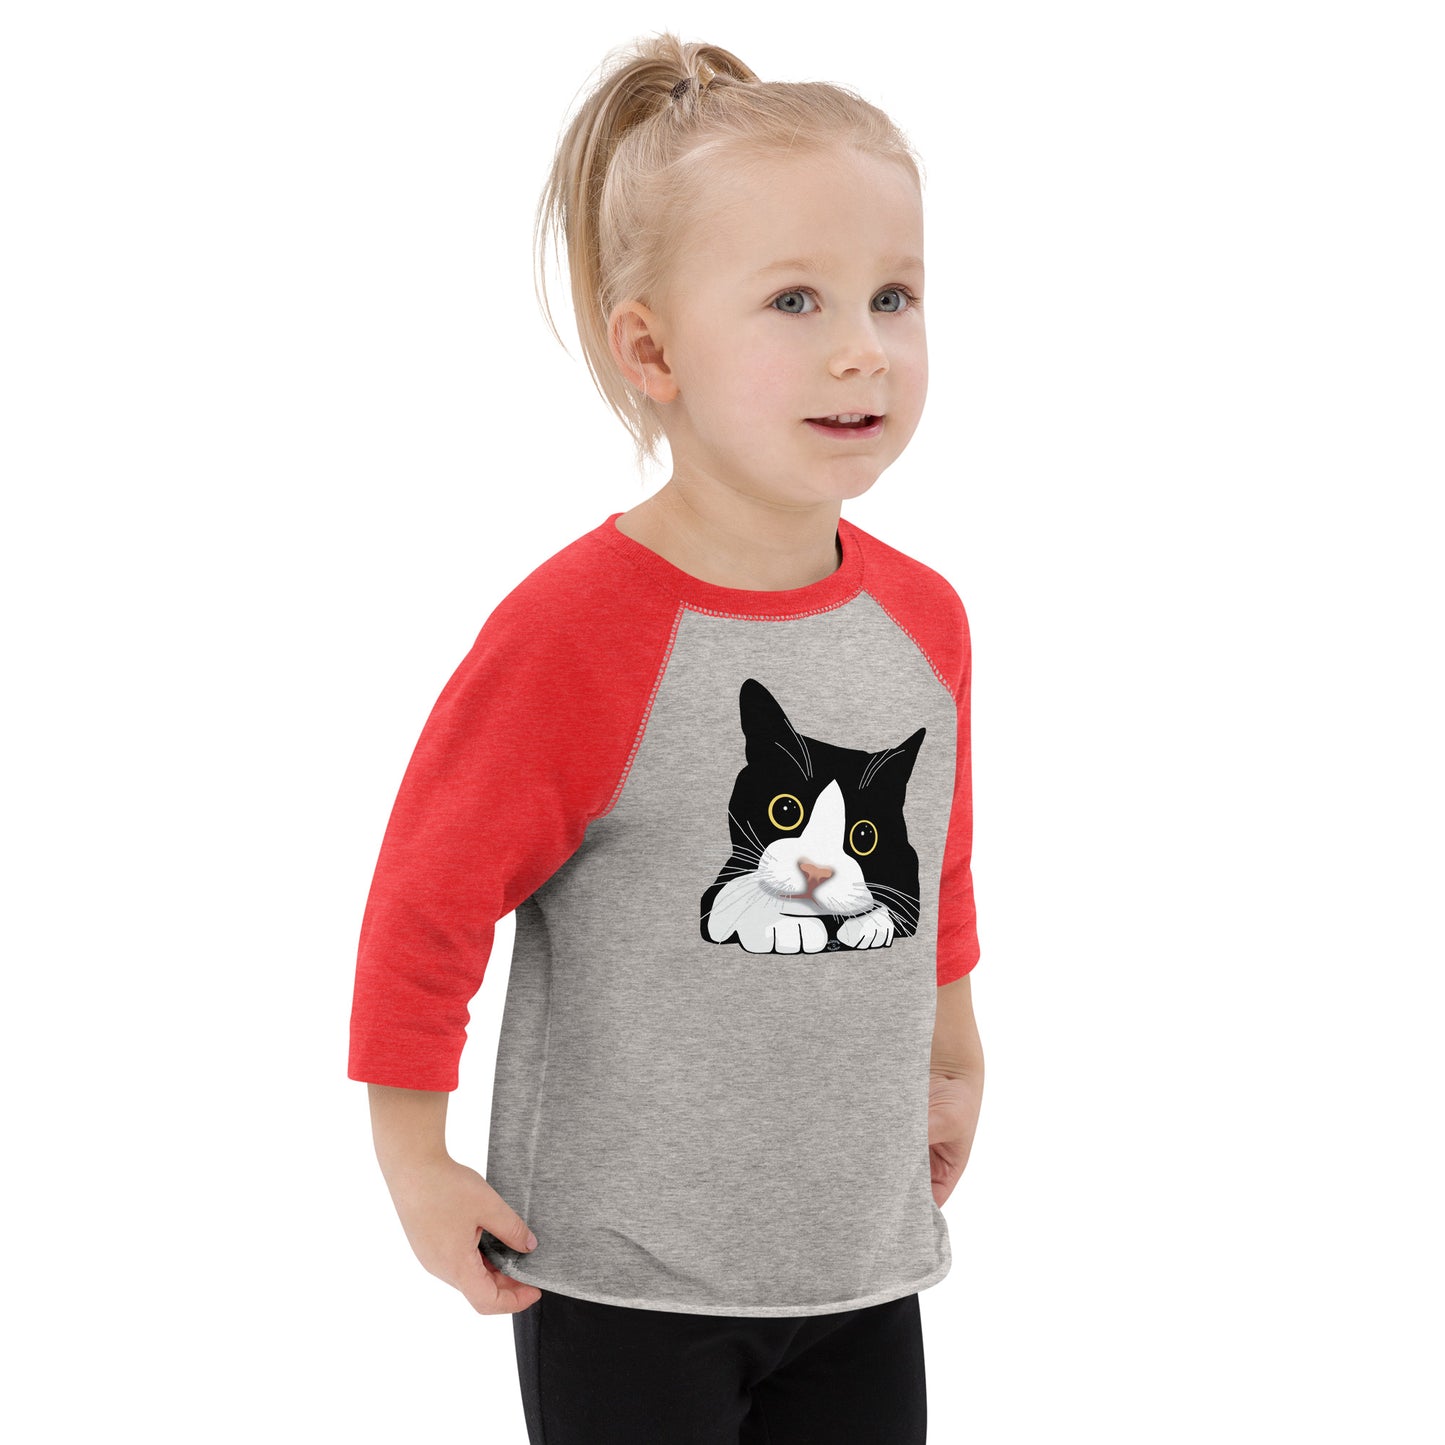 "Kitten with Big Eyes" Toddler Baseball Shirt